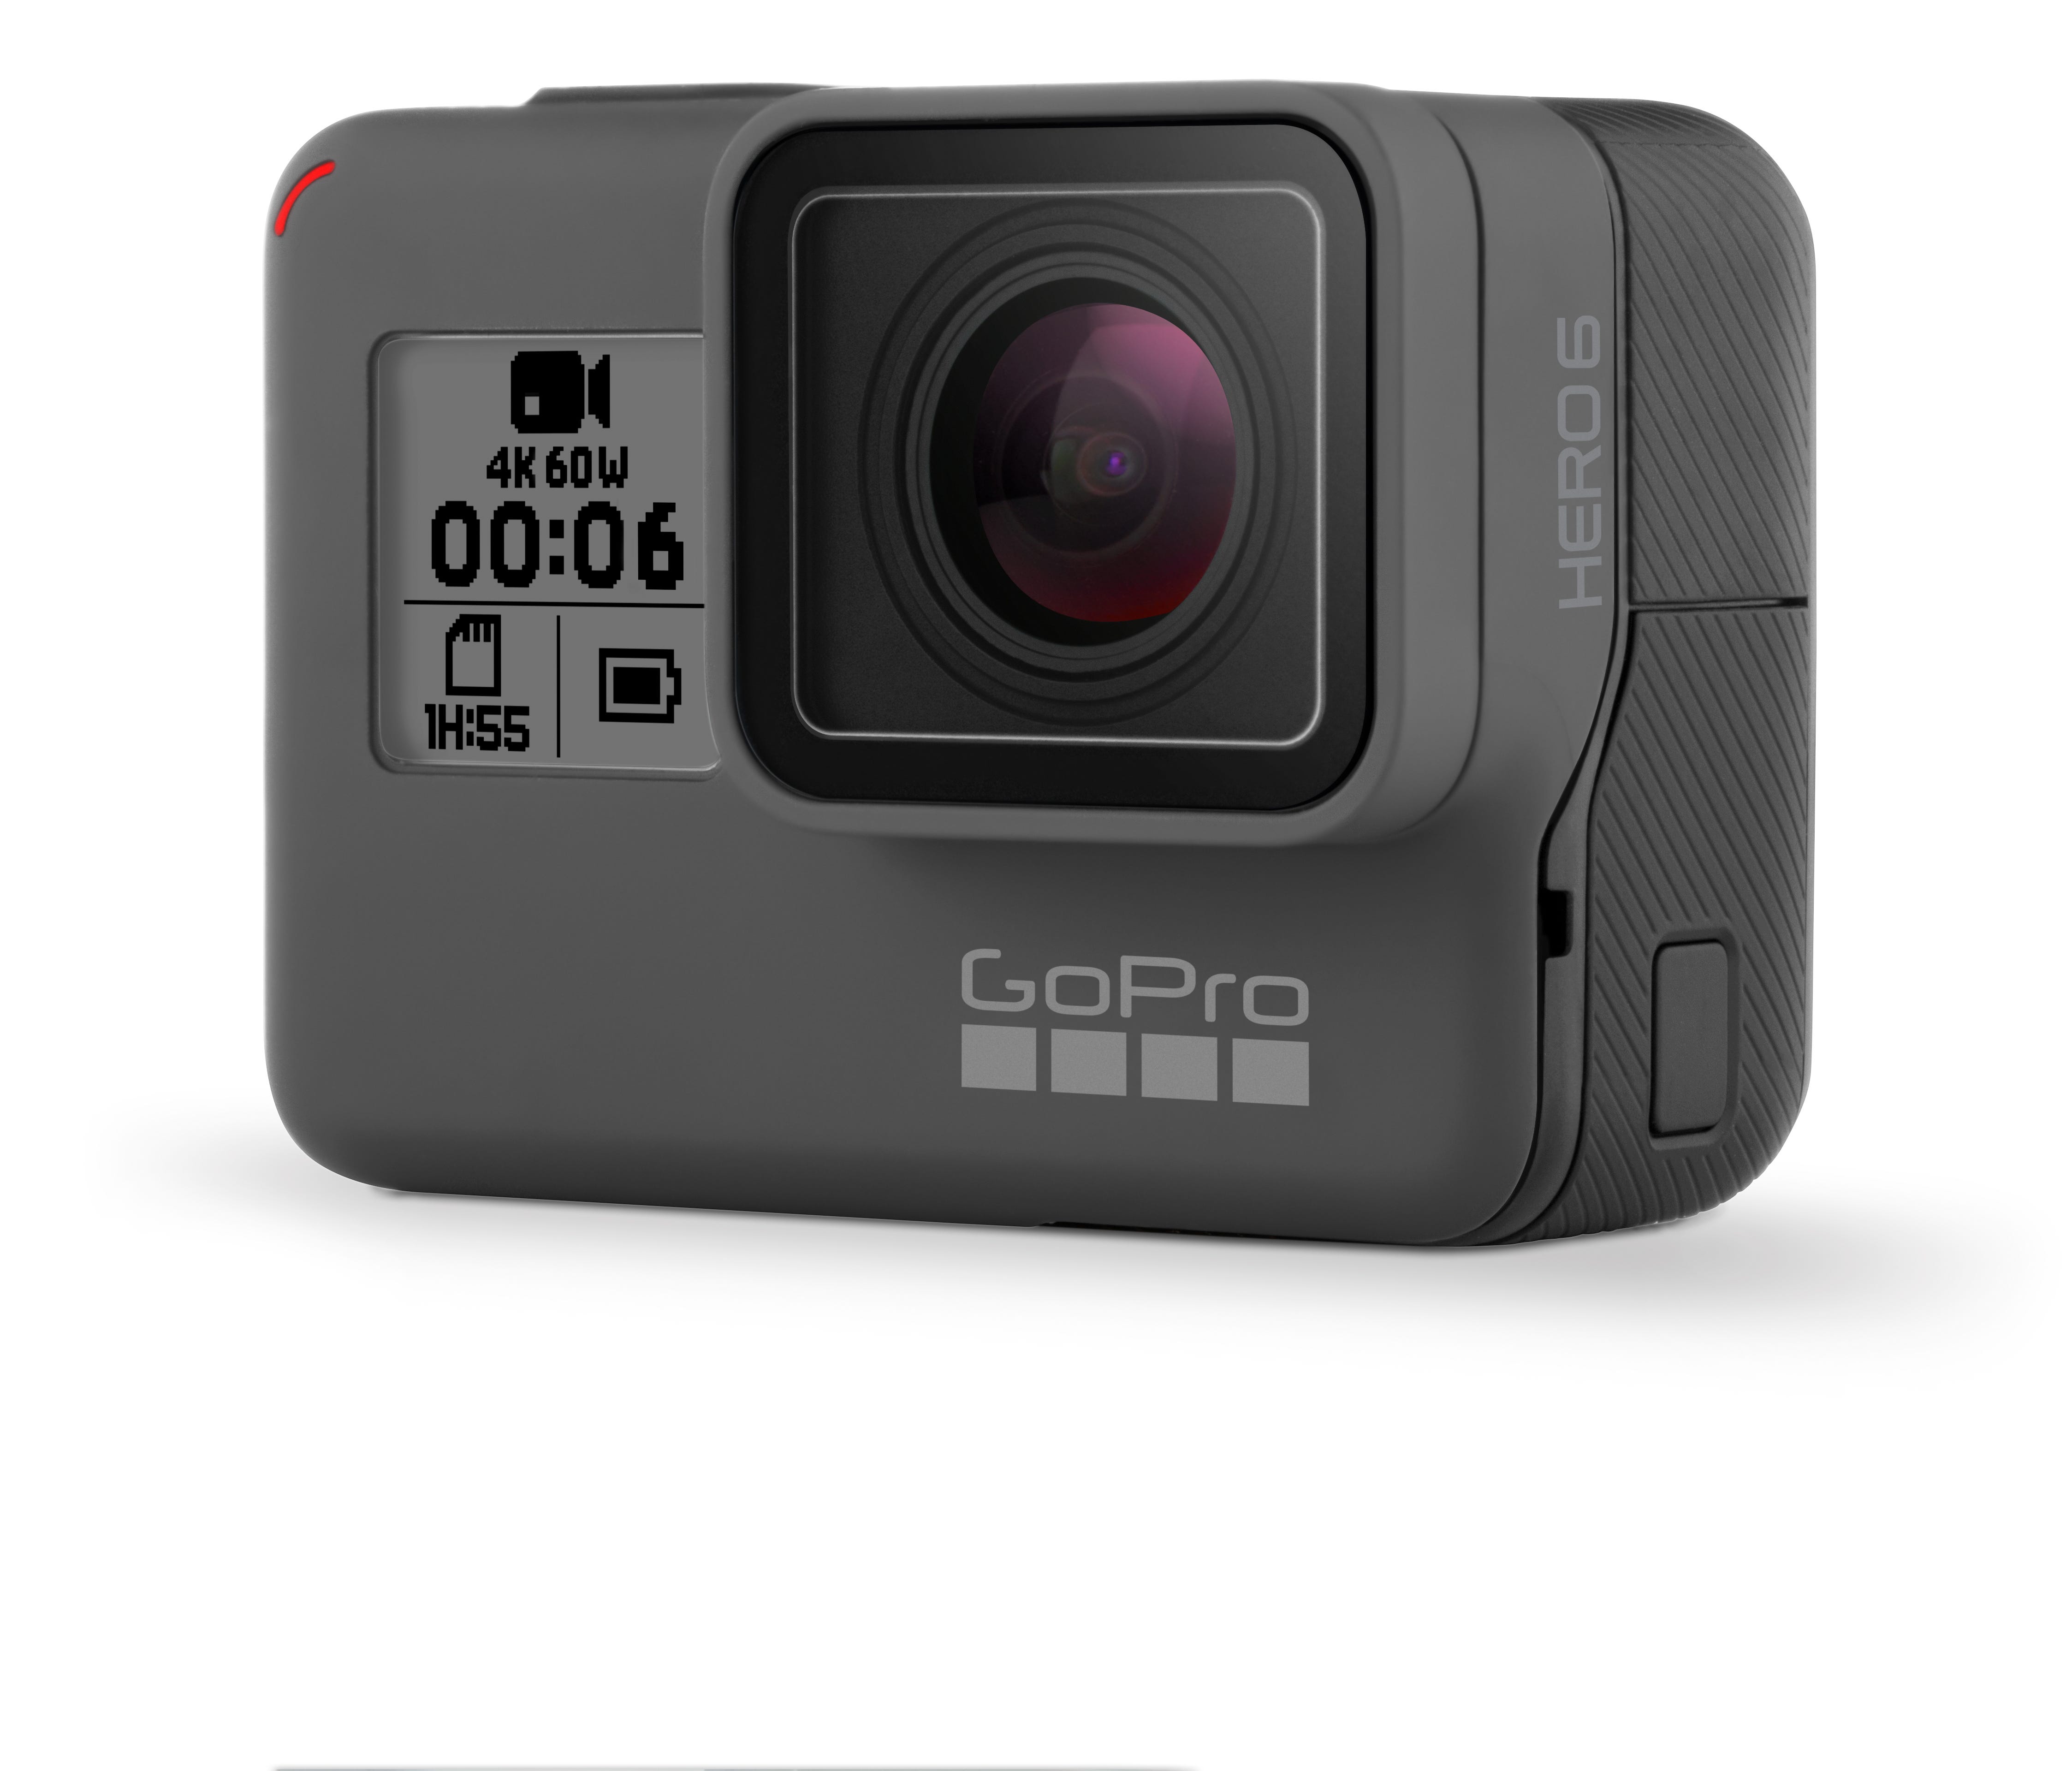 New GoPro Hero6 camera promises improved image stabilization